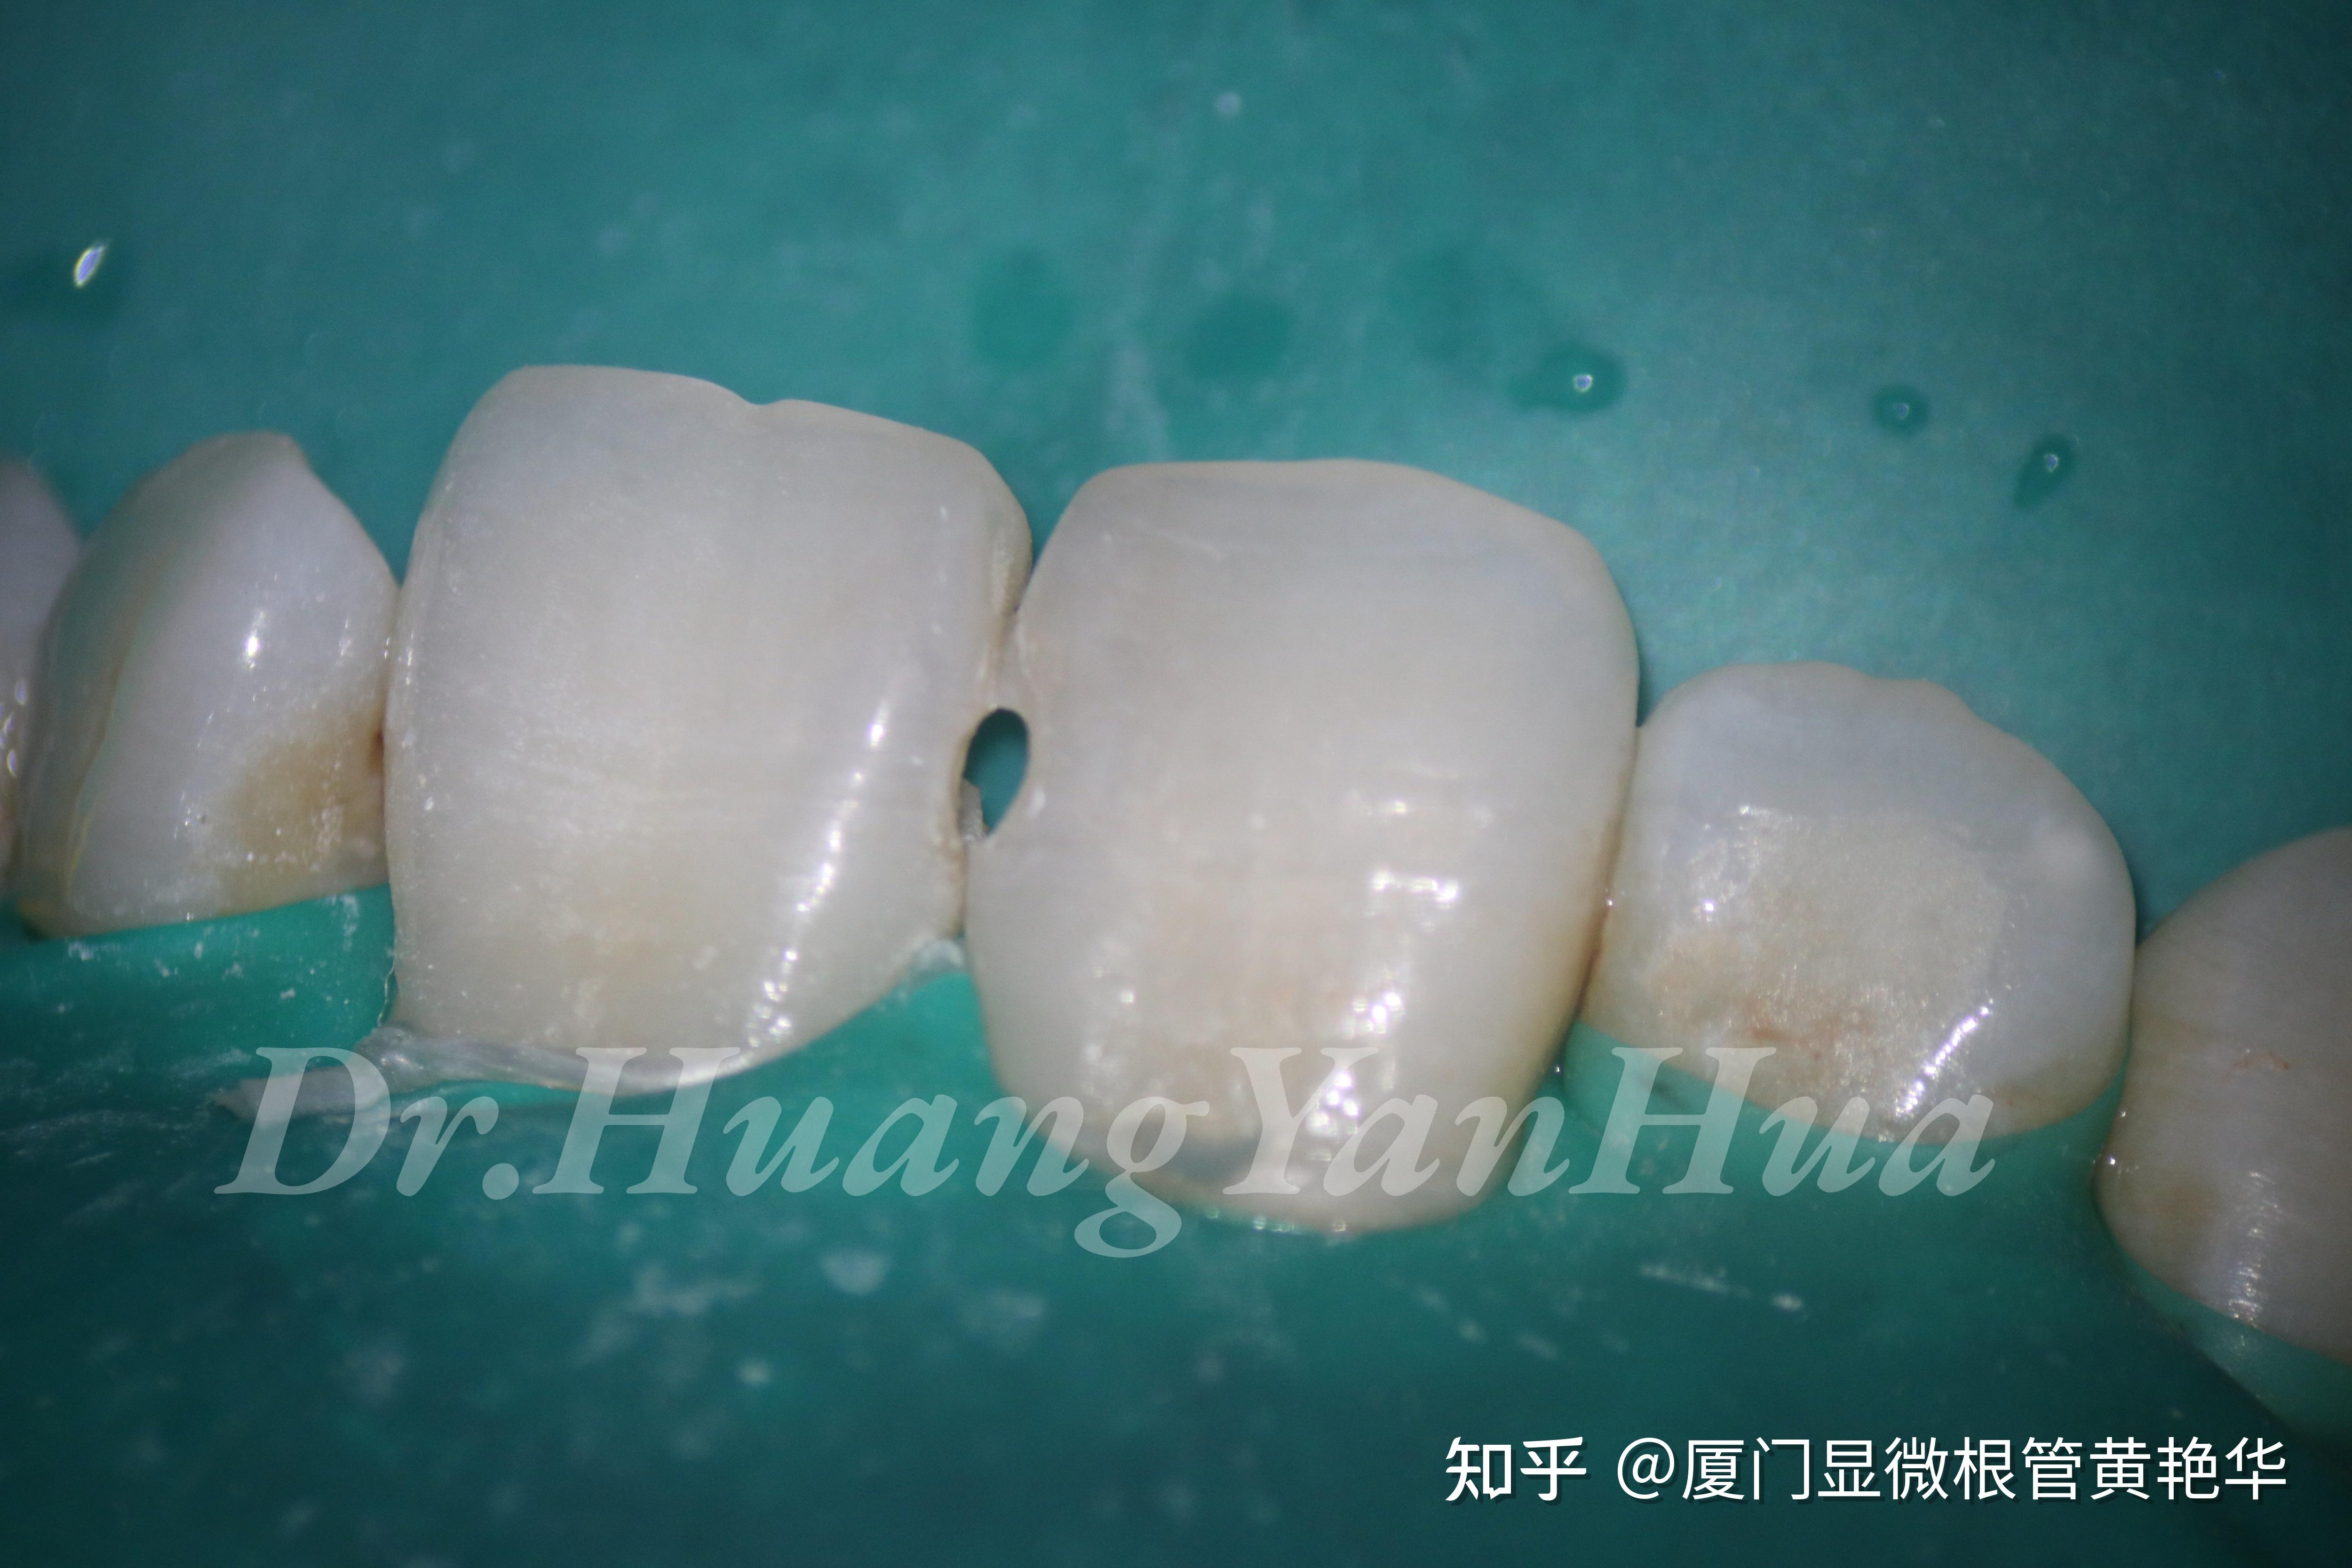 醫師，我的牙齒破掉了怎麼辦？------全瓷嵌體修復大範圍蛀牙 - 案例介紹 - 美容牙科張凱榮醫師